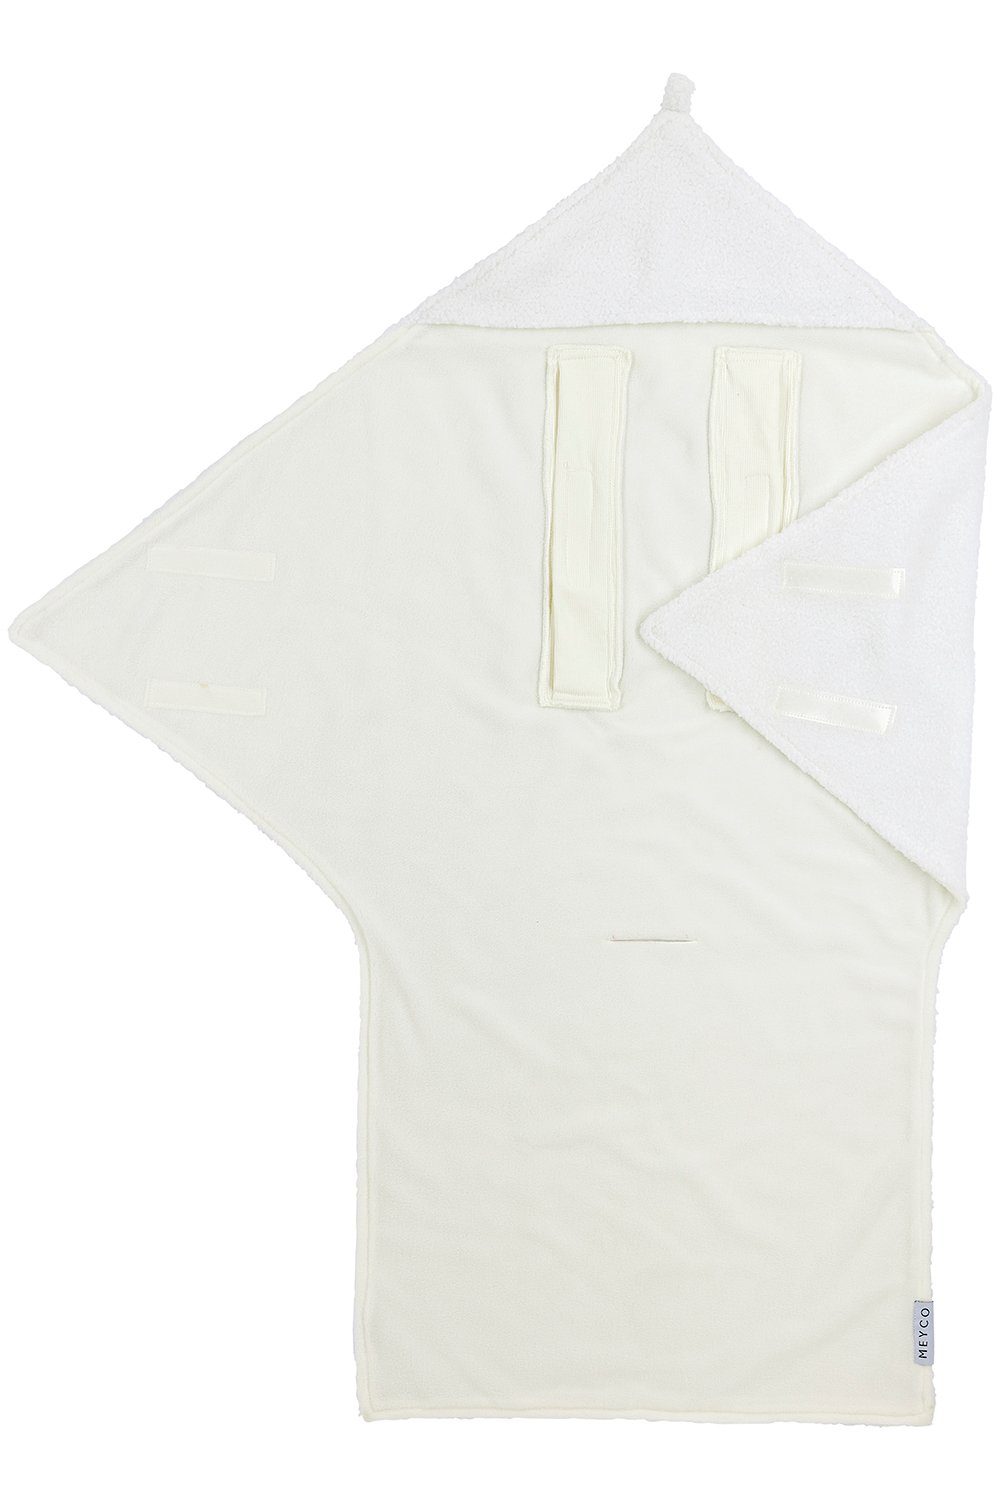 Off-White OTTO online Wohndecken kaufen » Off-White Decken |